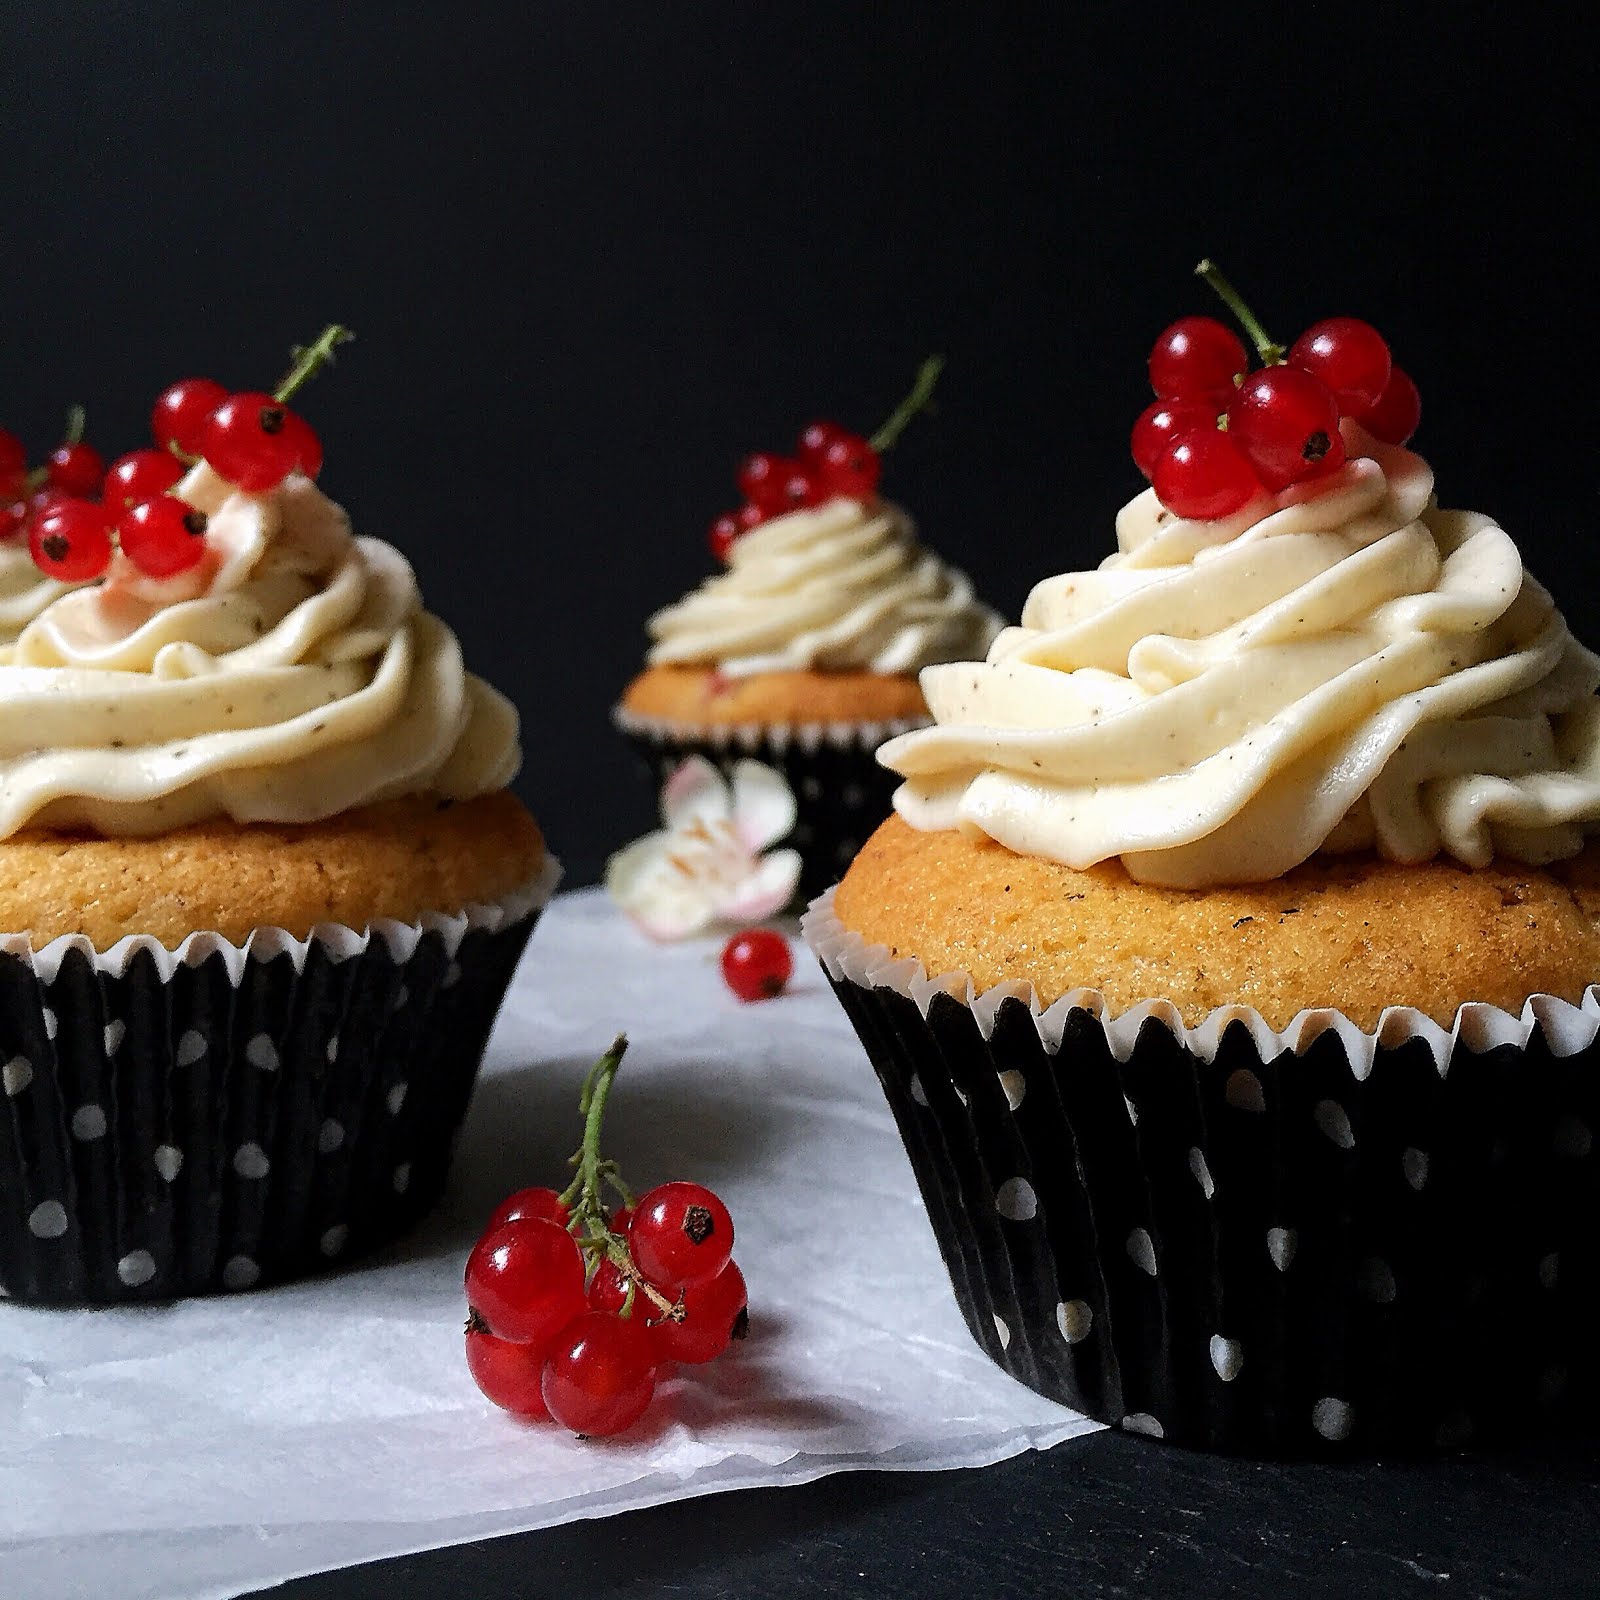 Hidden Sweet Treats: Johannisbeer-Cupcakes mit weisser Schokolade